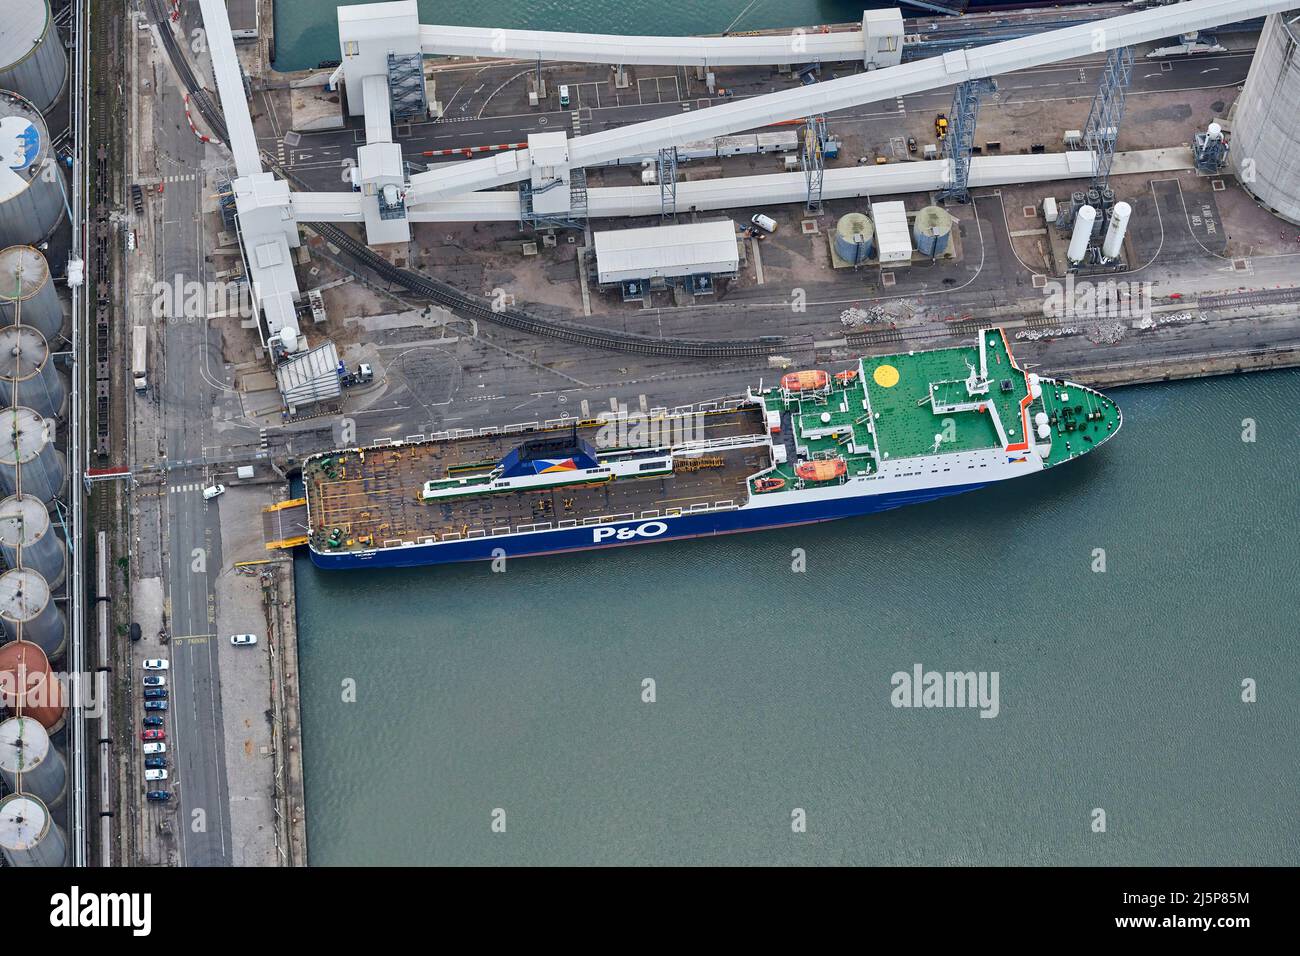 P & O ferry, en Seaforth Docks, Liverpool, Merseyside, noroeste de Inglaterra, Reino Unido, desde el aire Foto de stock